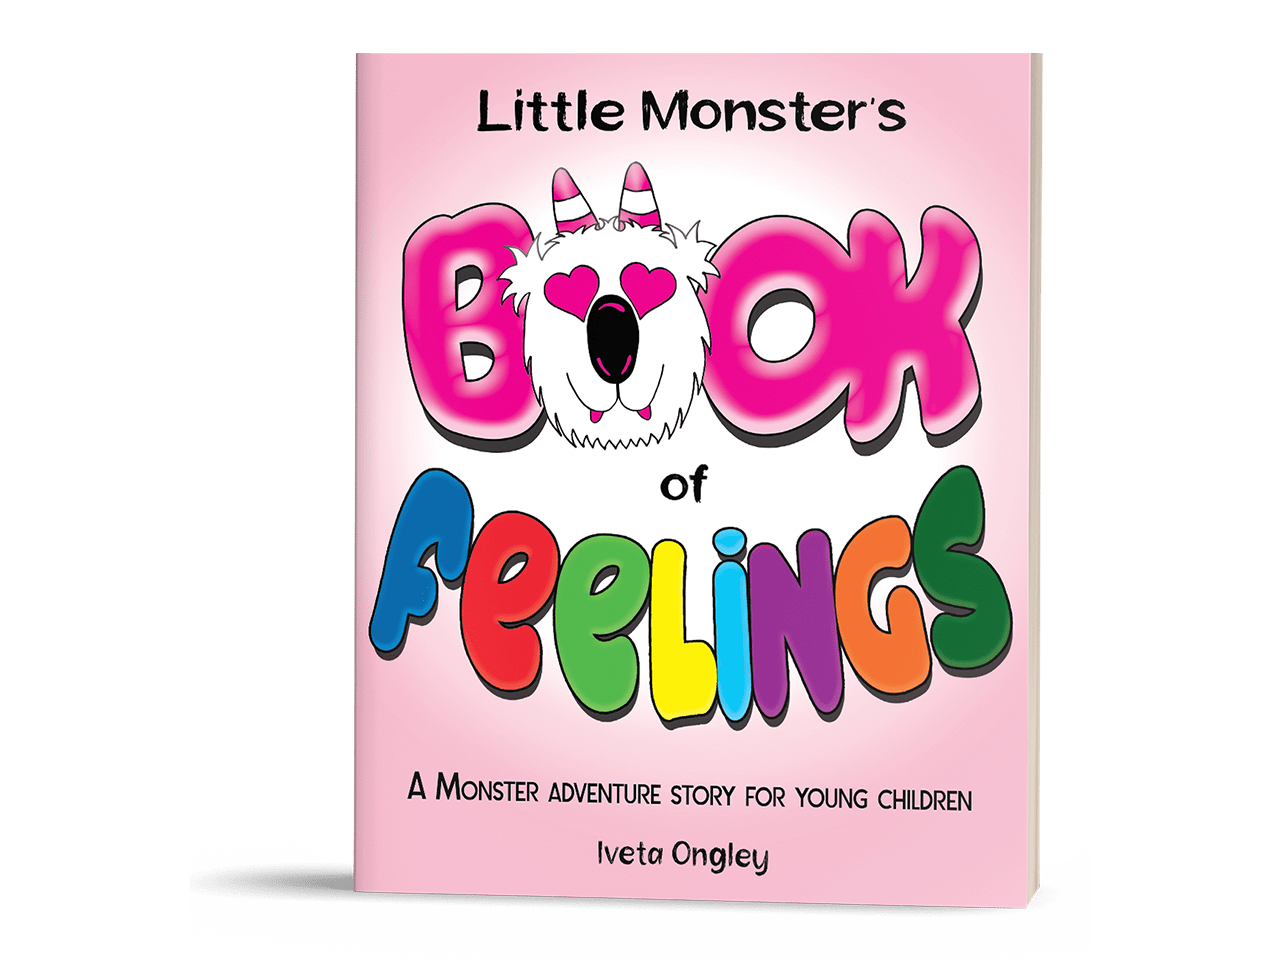 Little Monster's Book of Feelings